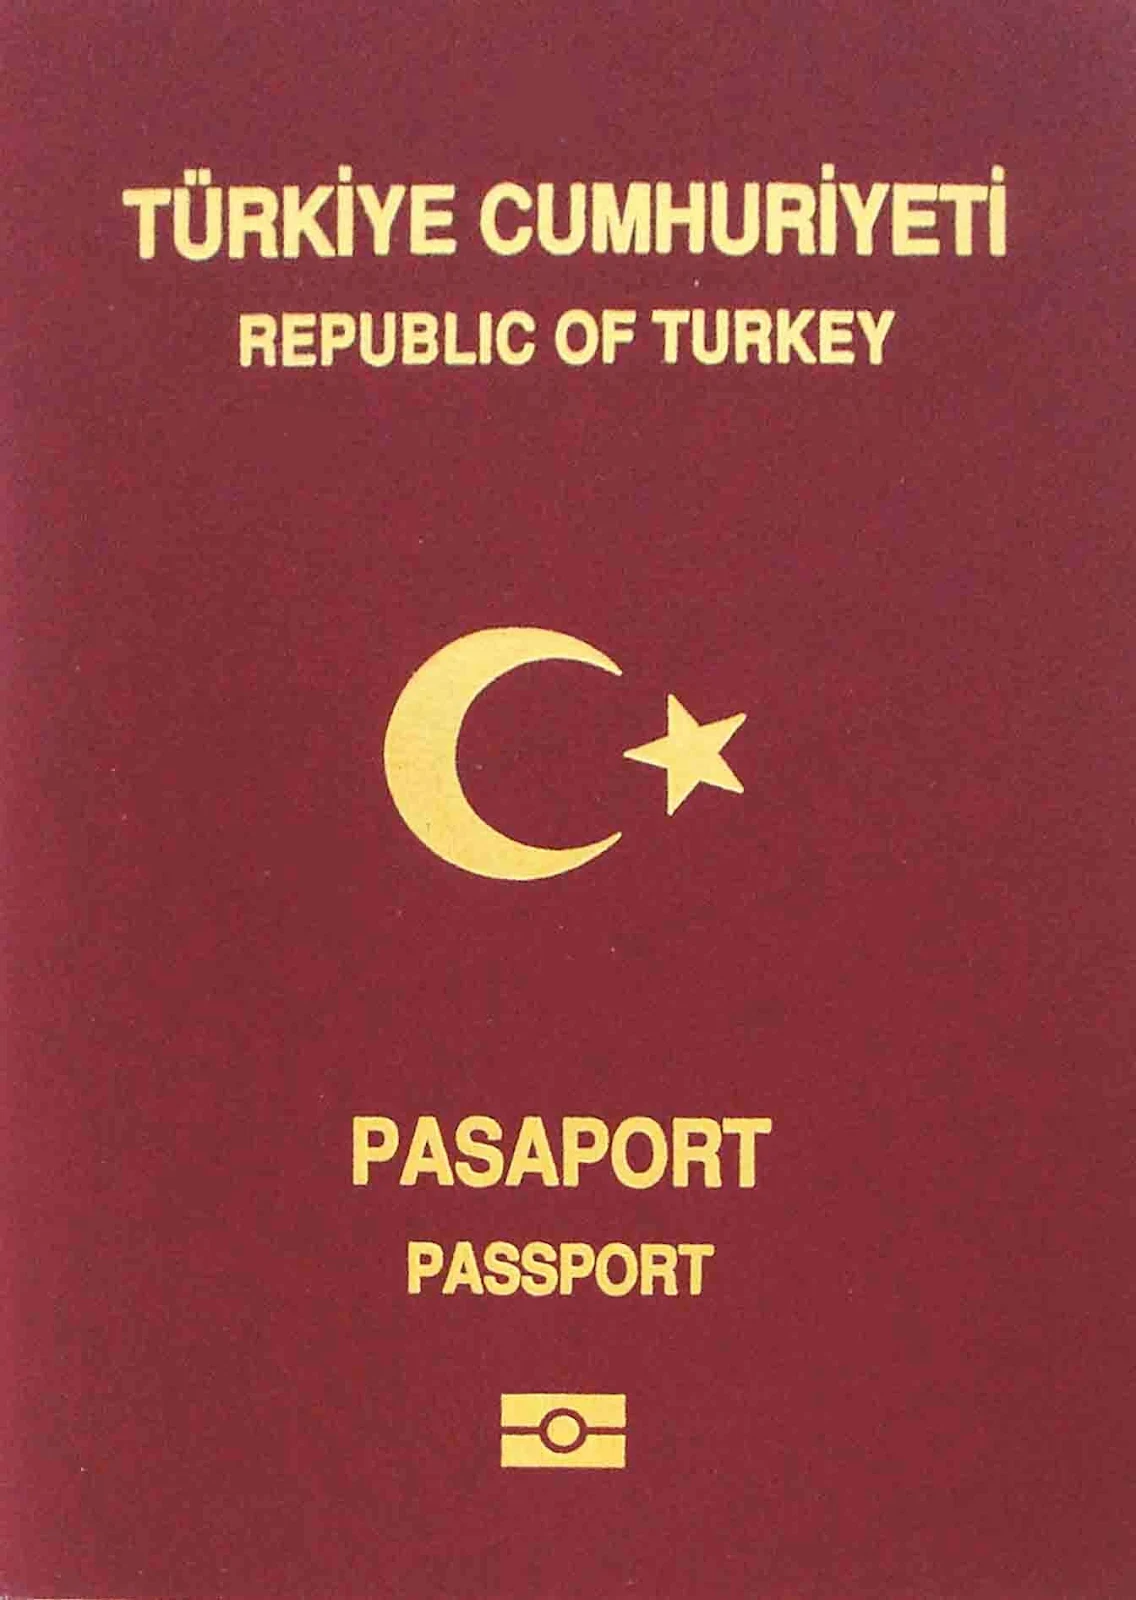 الأوراق المطلوبة لإستخراج تأشيرة السفر إلى تركيا للمصريين